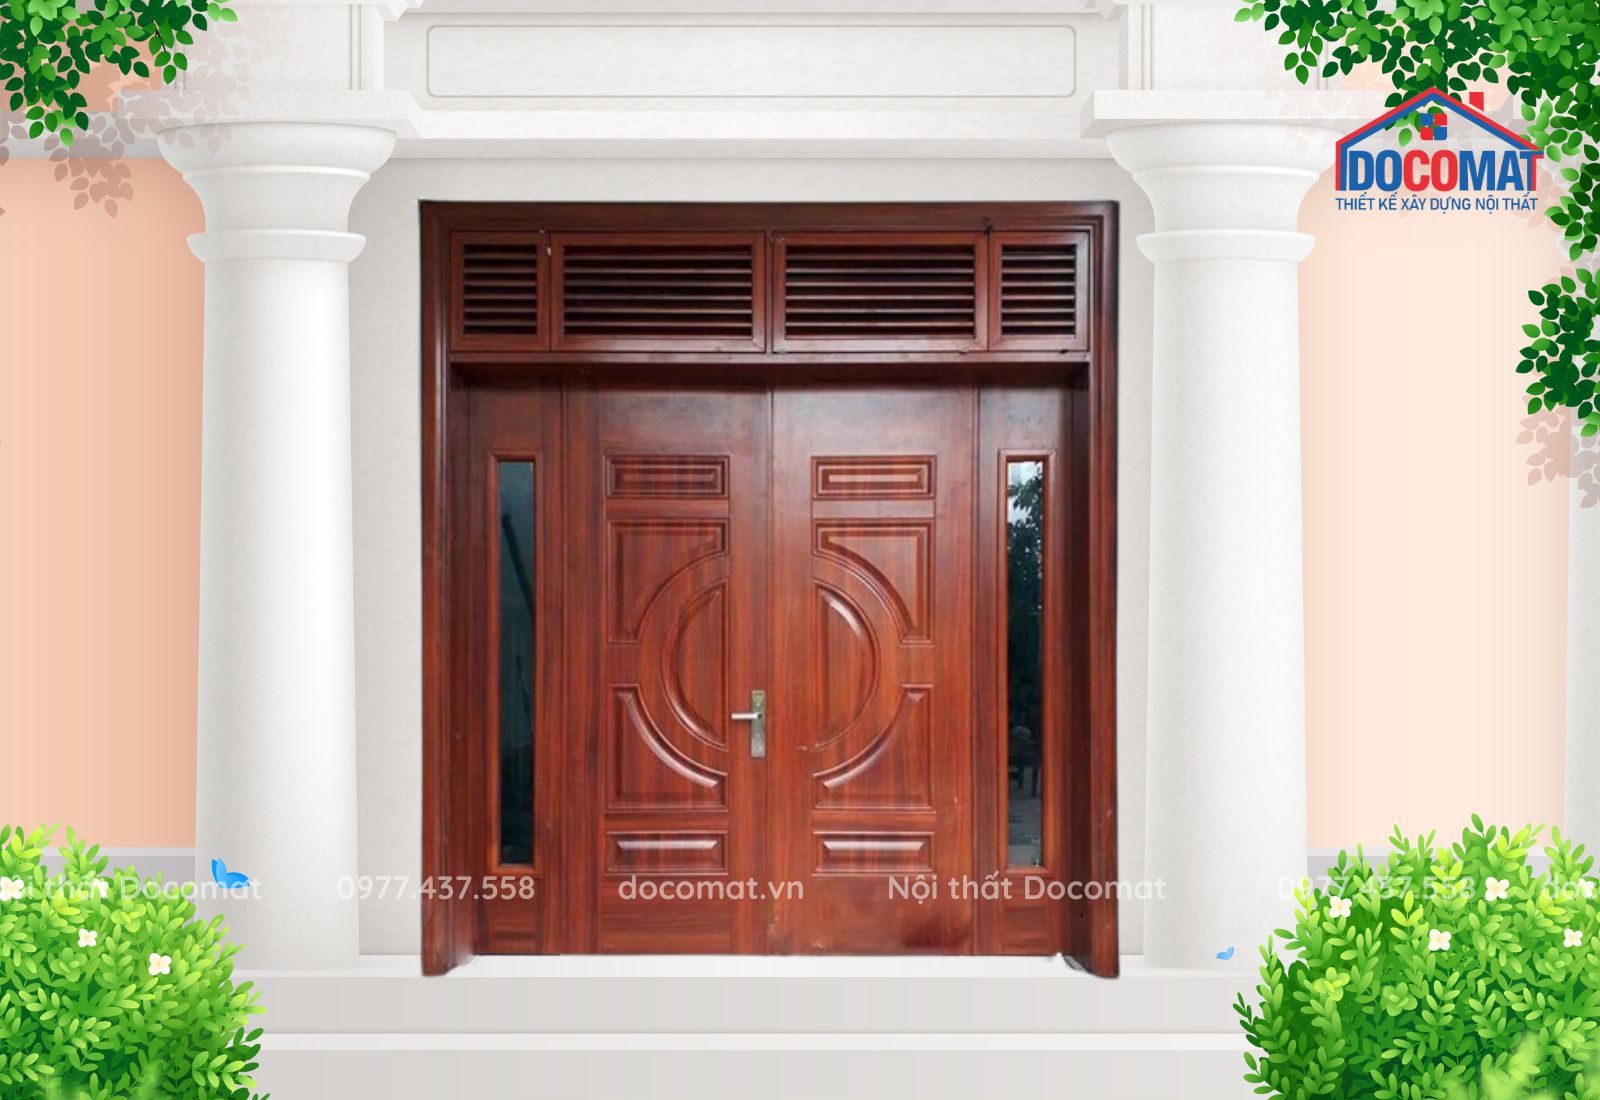 Mẫu cửa thép vân gỗ thường được khách hàng sử dụng làm cửa chính